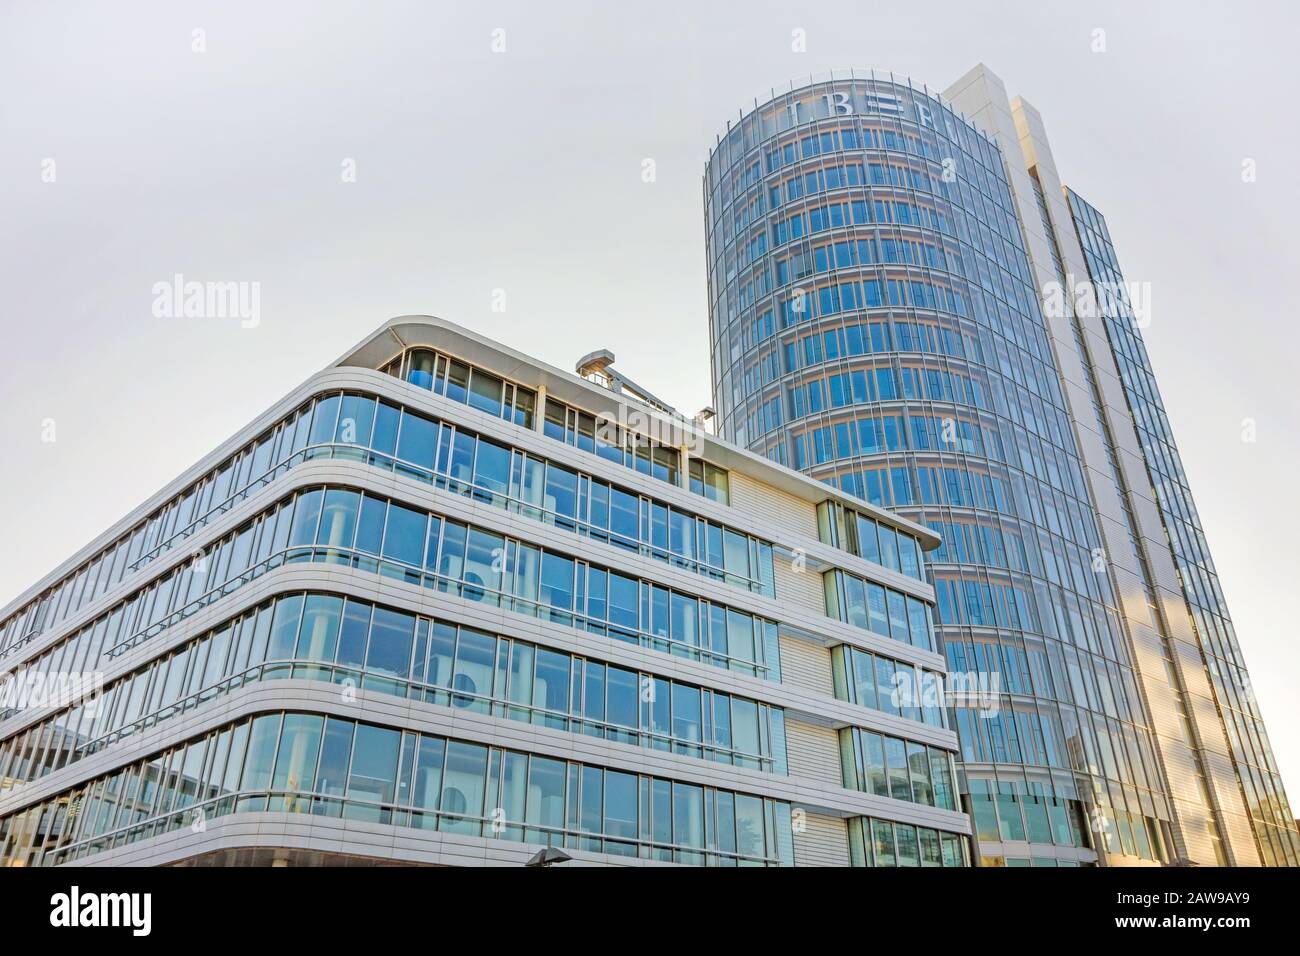 Stoccarda, Germania - 1 novembre 2015: Edificio LBBW (Banca regionale di Baden-Wurttemberg) di Stoccarda - edificio moderno con facciata in vetro al piano Foto Stock